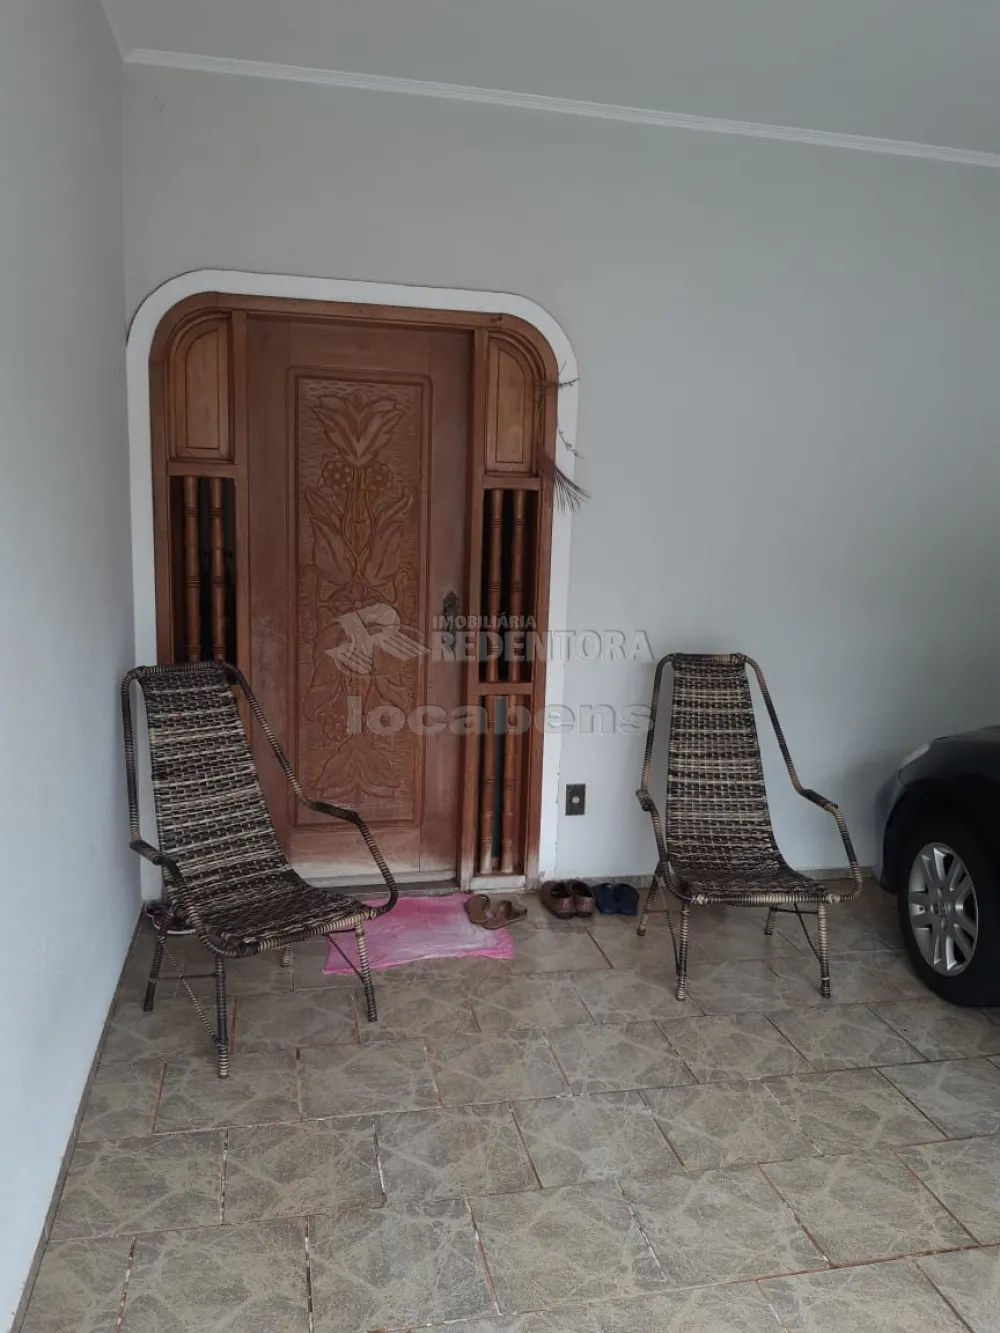 Comprar Casa / Padrão em São José do Rio Preto R$ 680.000,00 - Foto 3